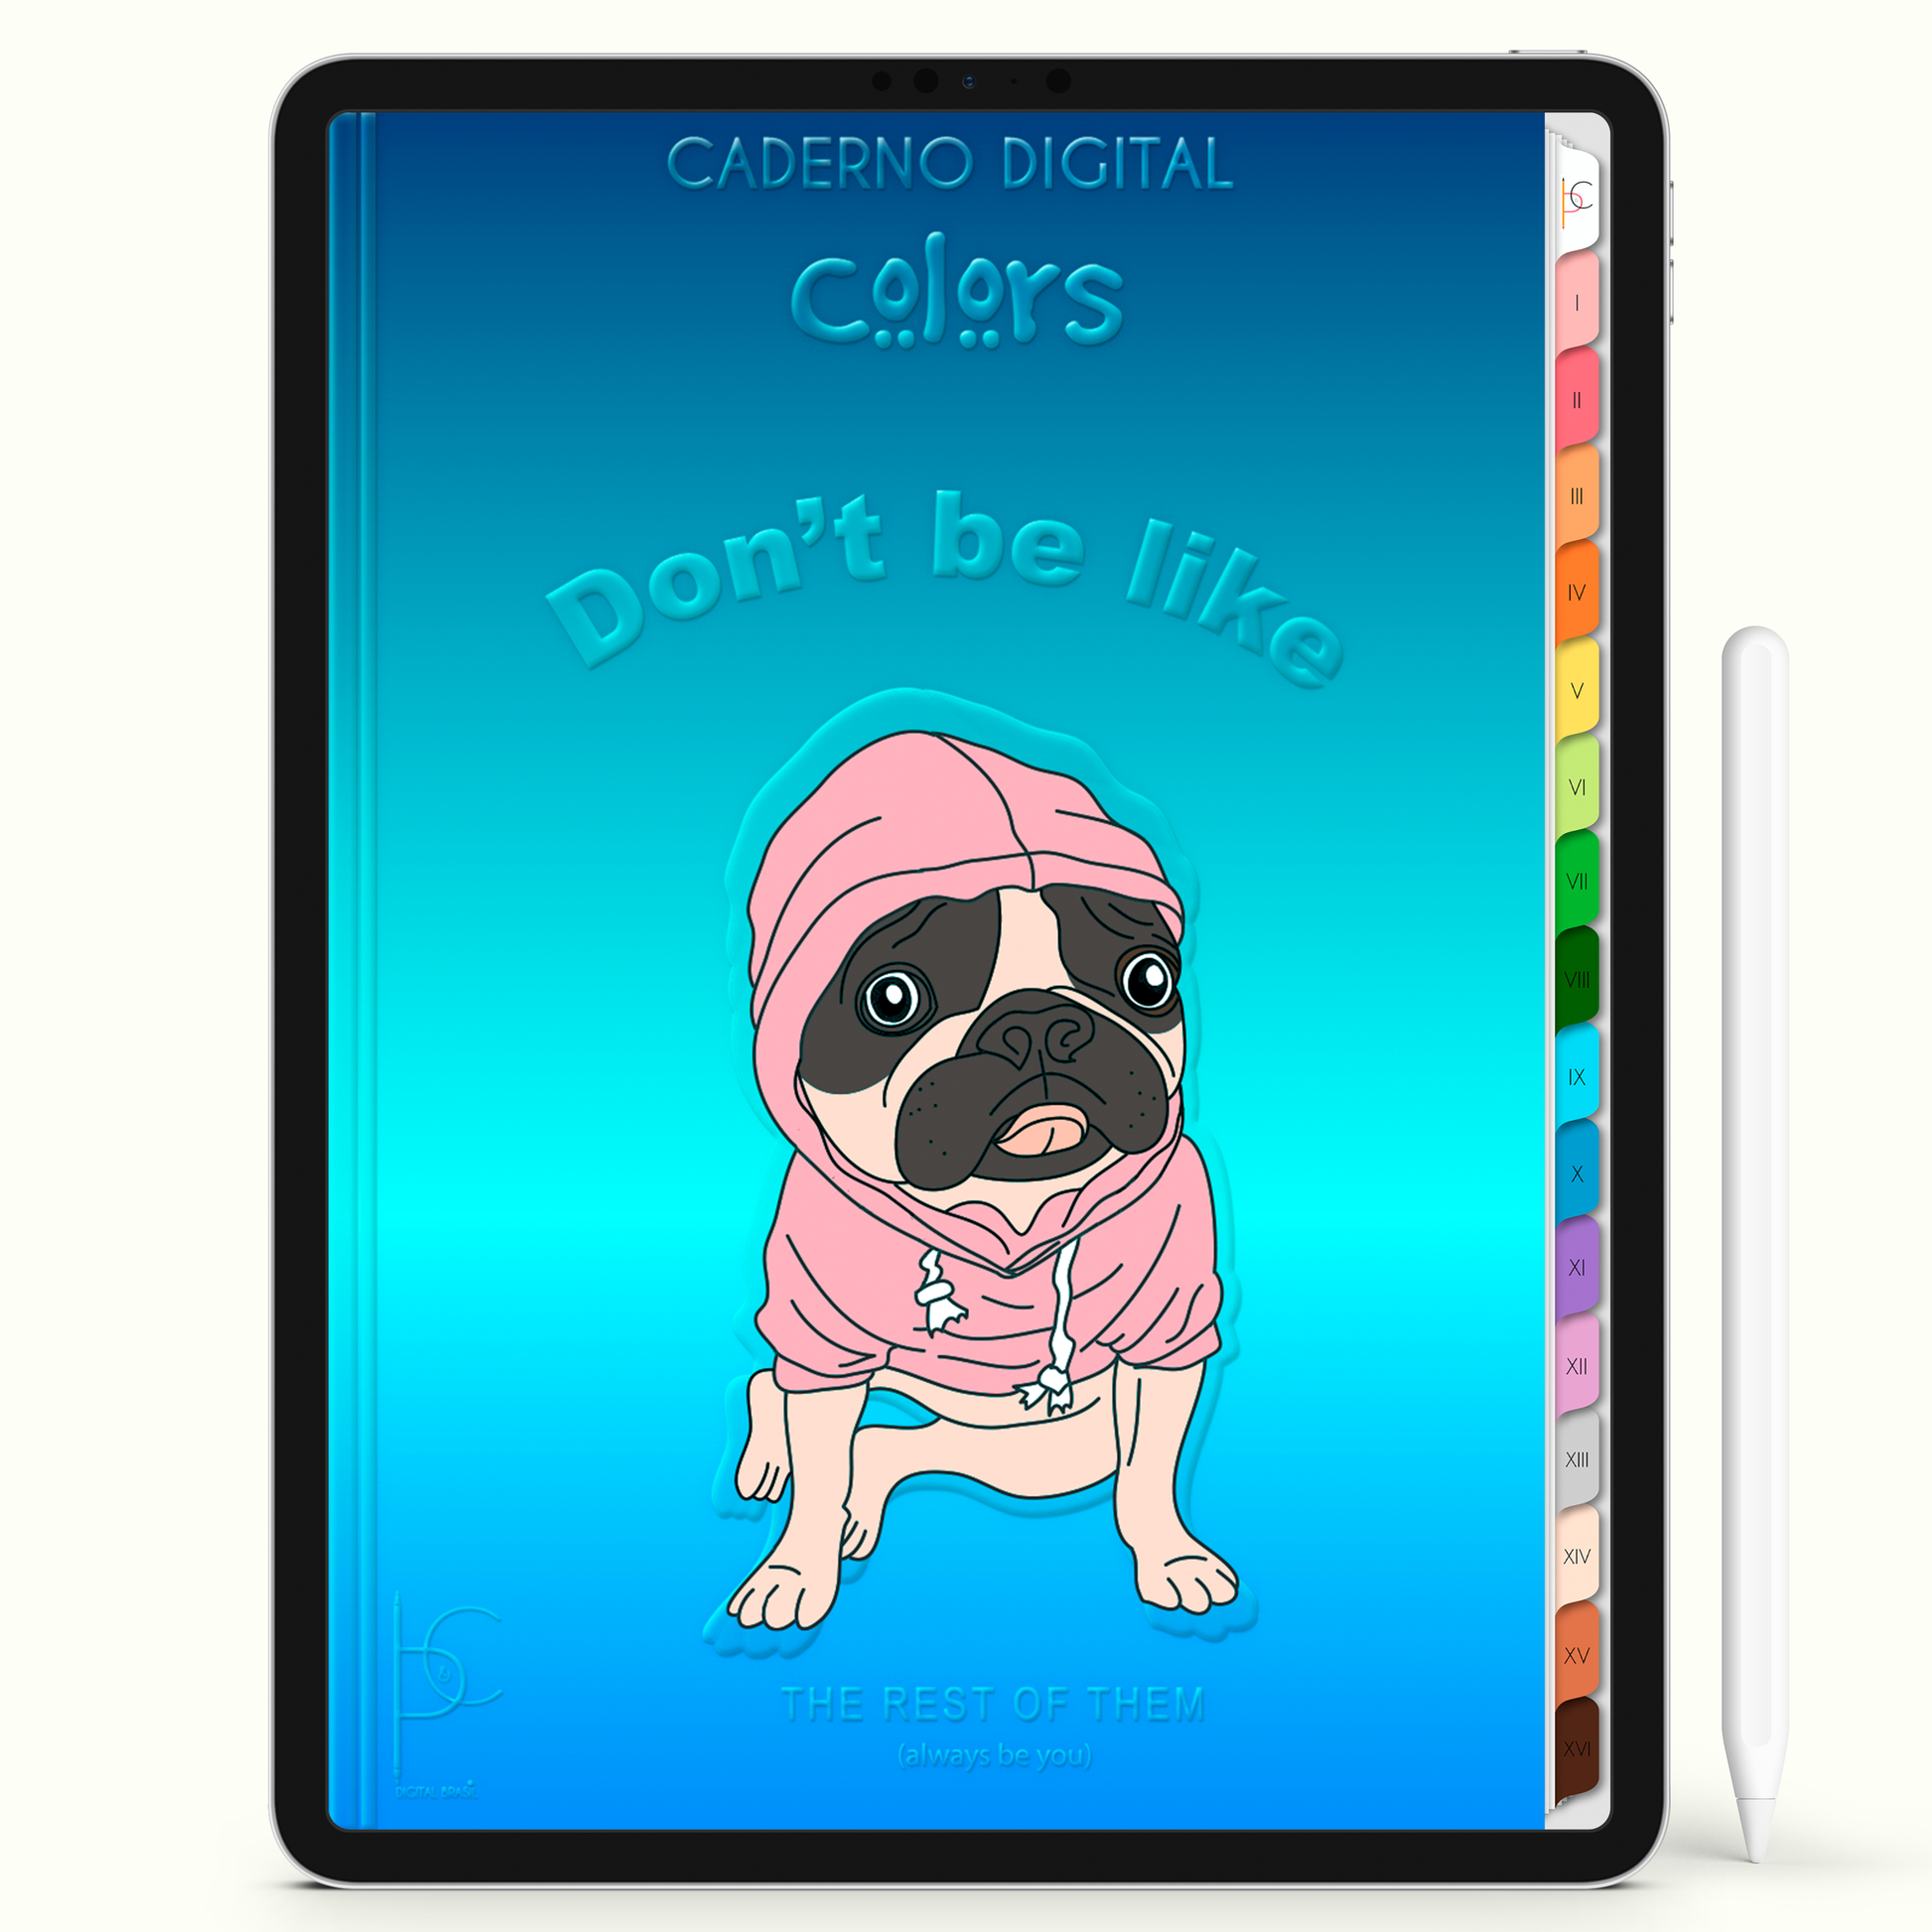 Caderno Digital Colors Like Blue 16 Matérias • Para iPad e Tablet Android • Download instantâneo • Sustentável